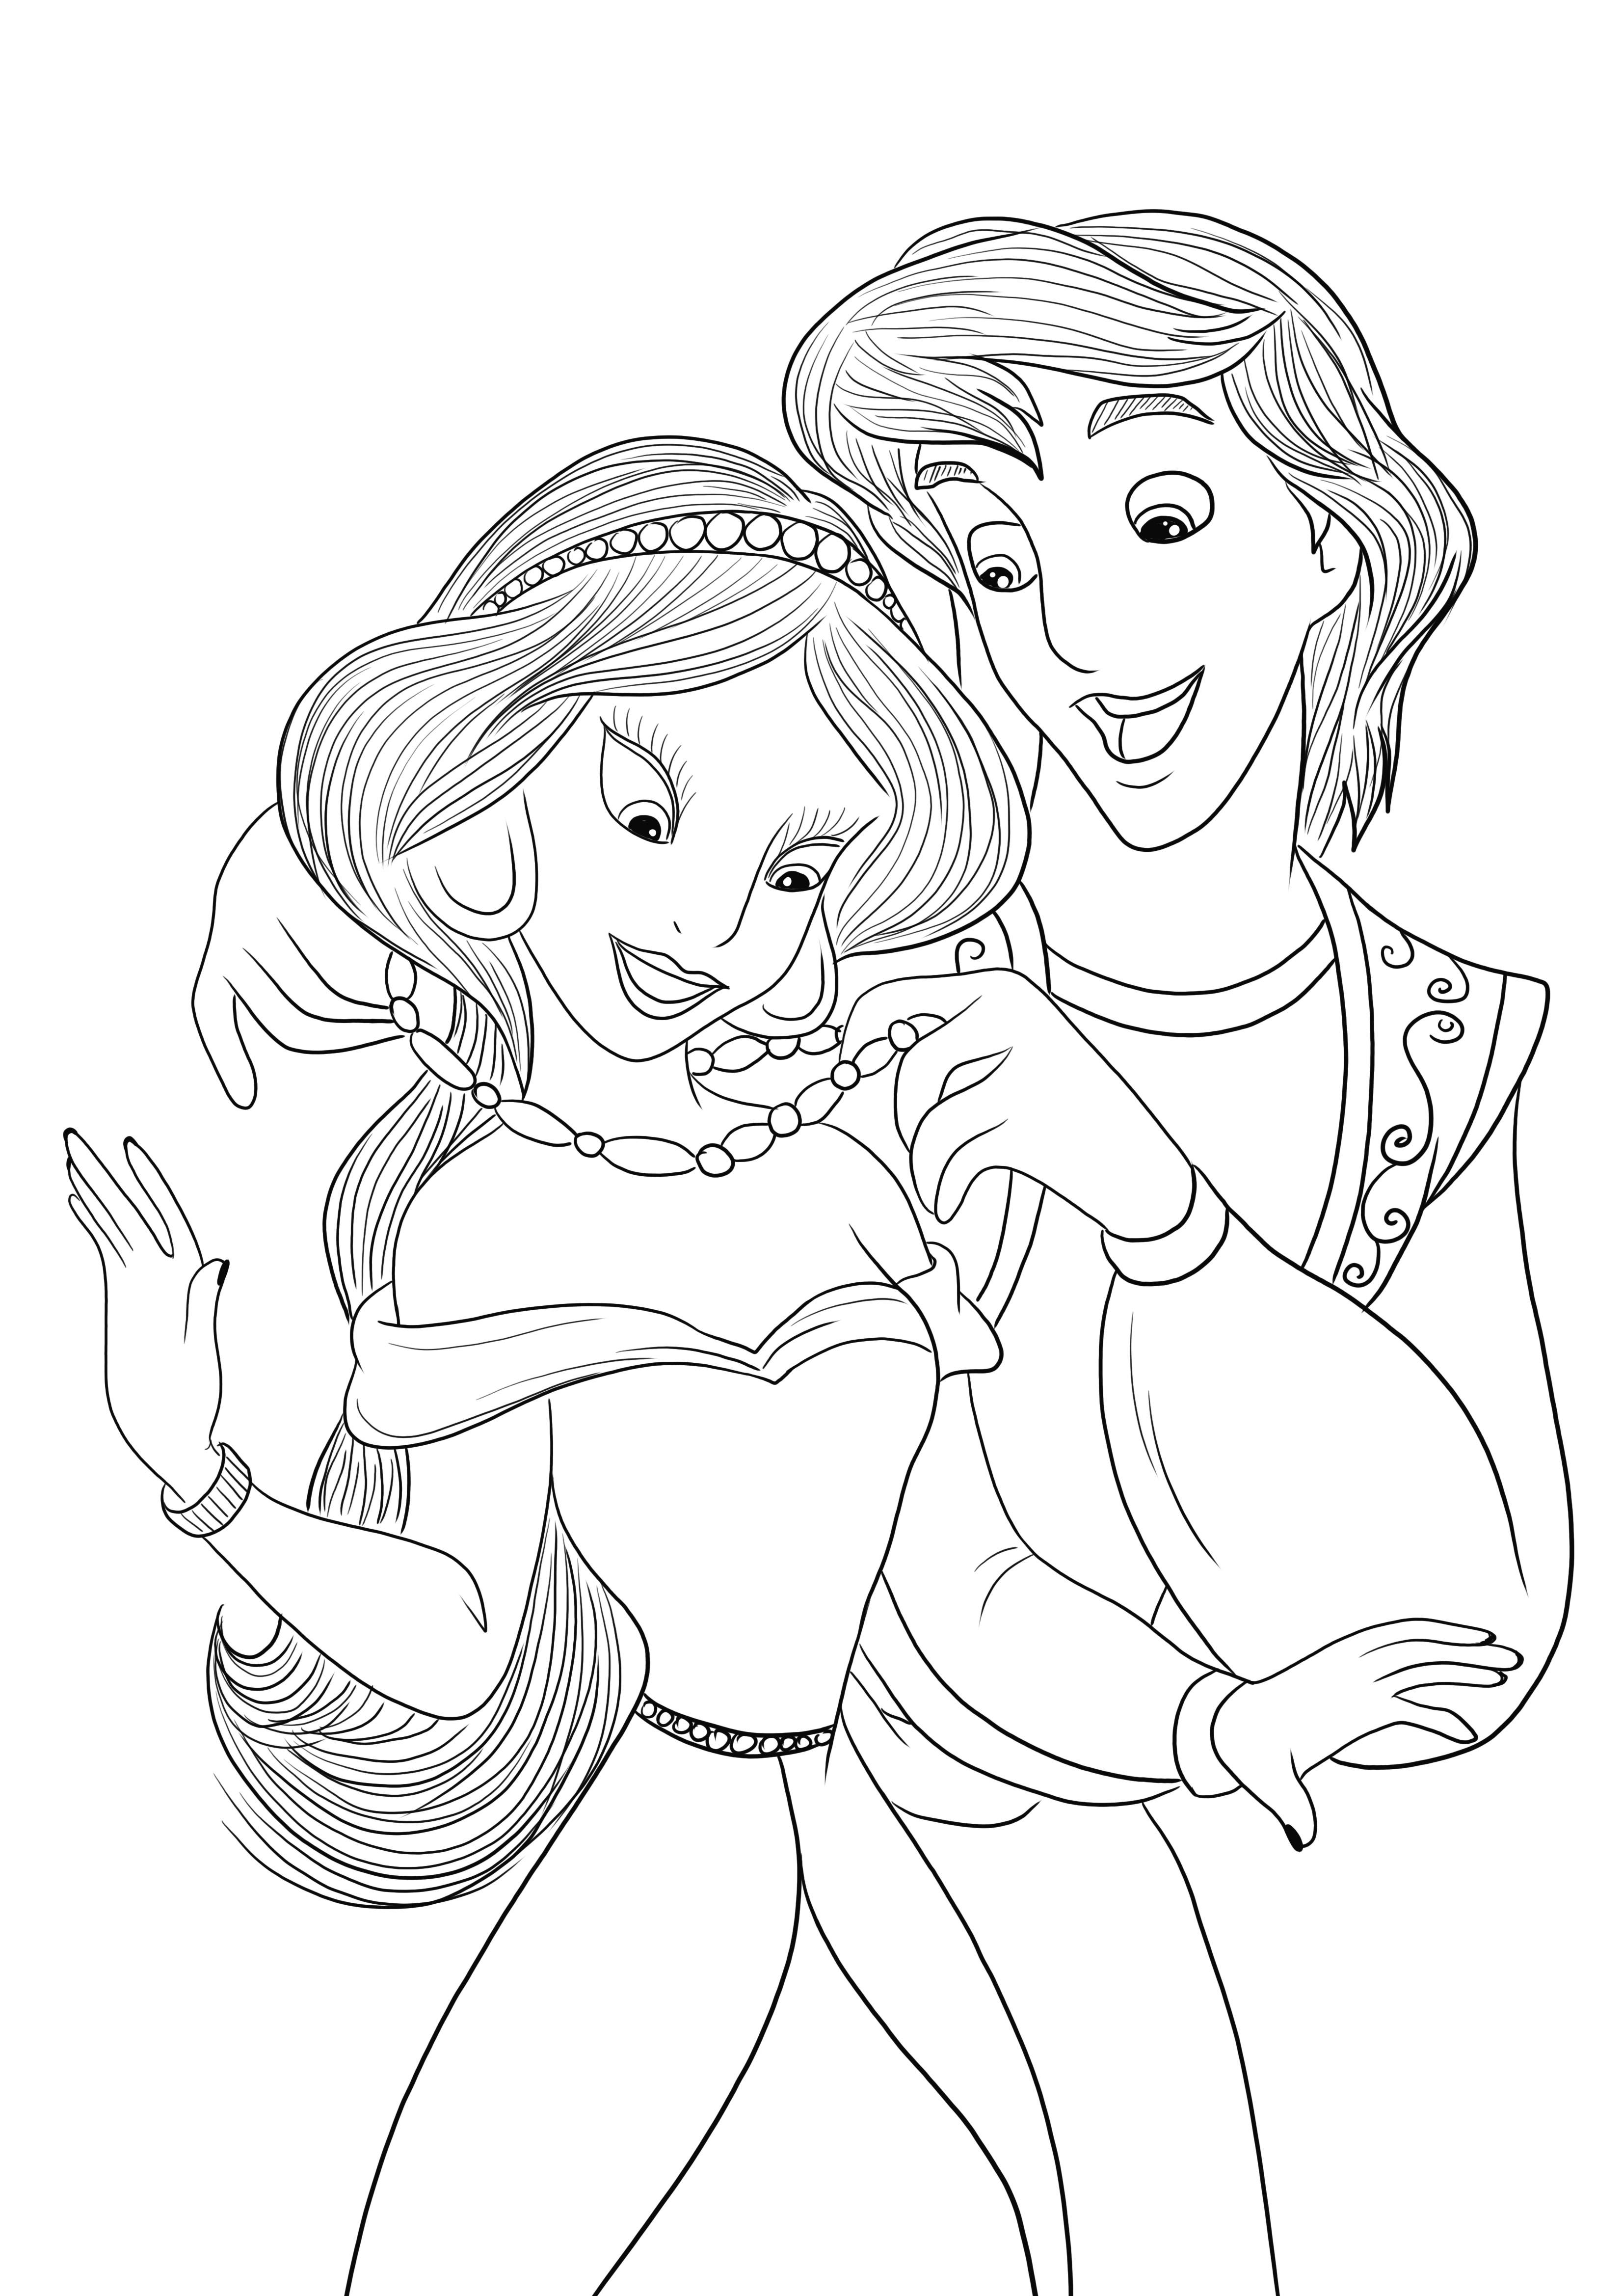 Çocukların renklendirmesi için Aladdin ve Jasmine boyama resminin ücretsiz indirilmesi